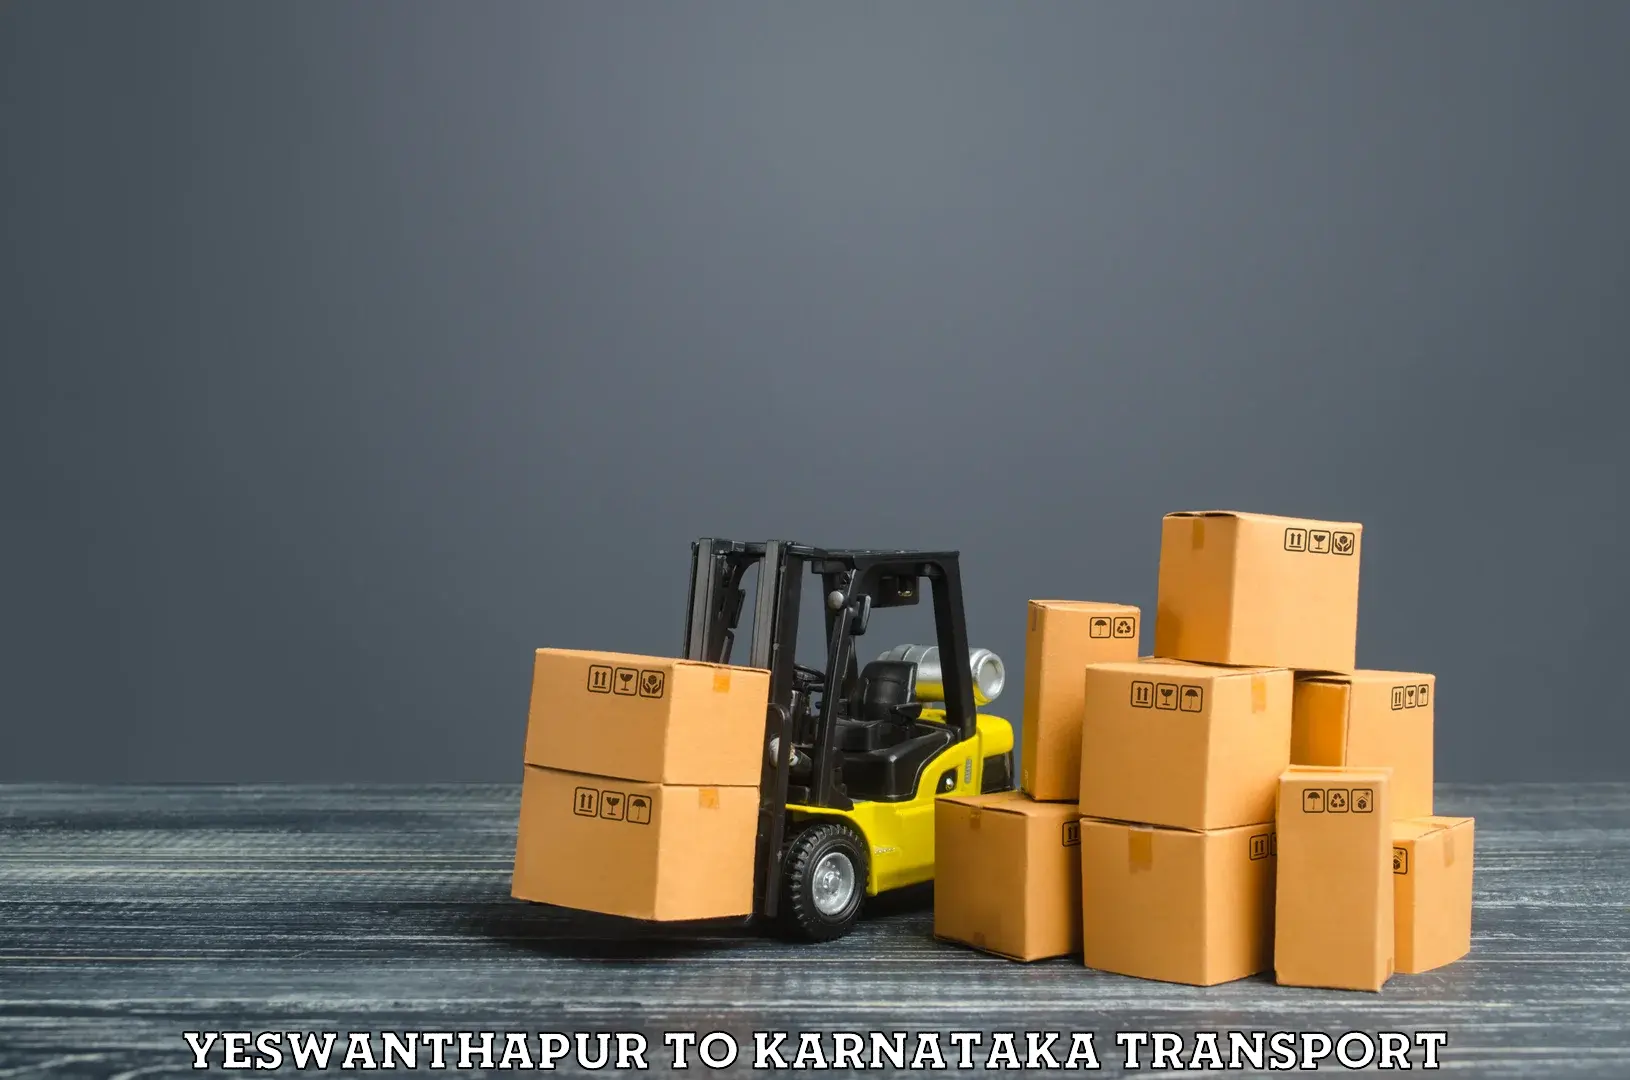 Shipping partner Yeswanthapur to Karnataka